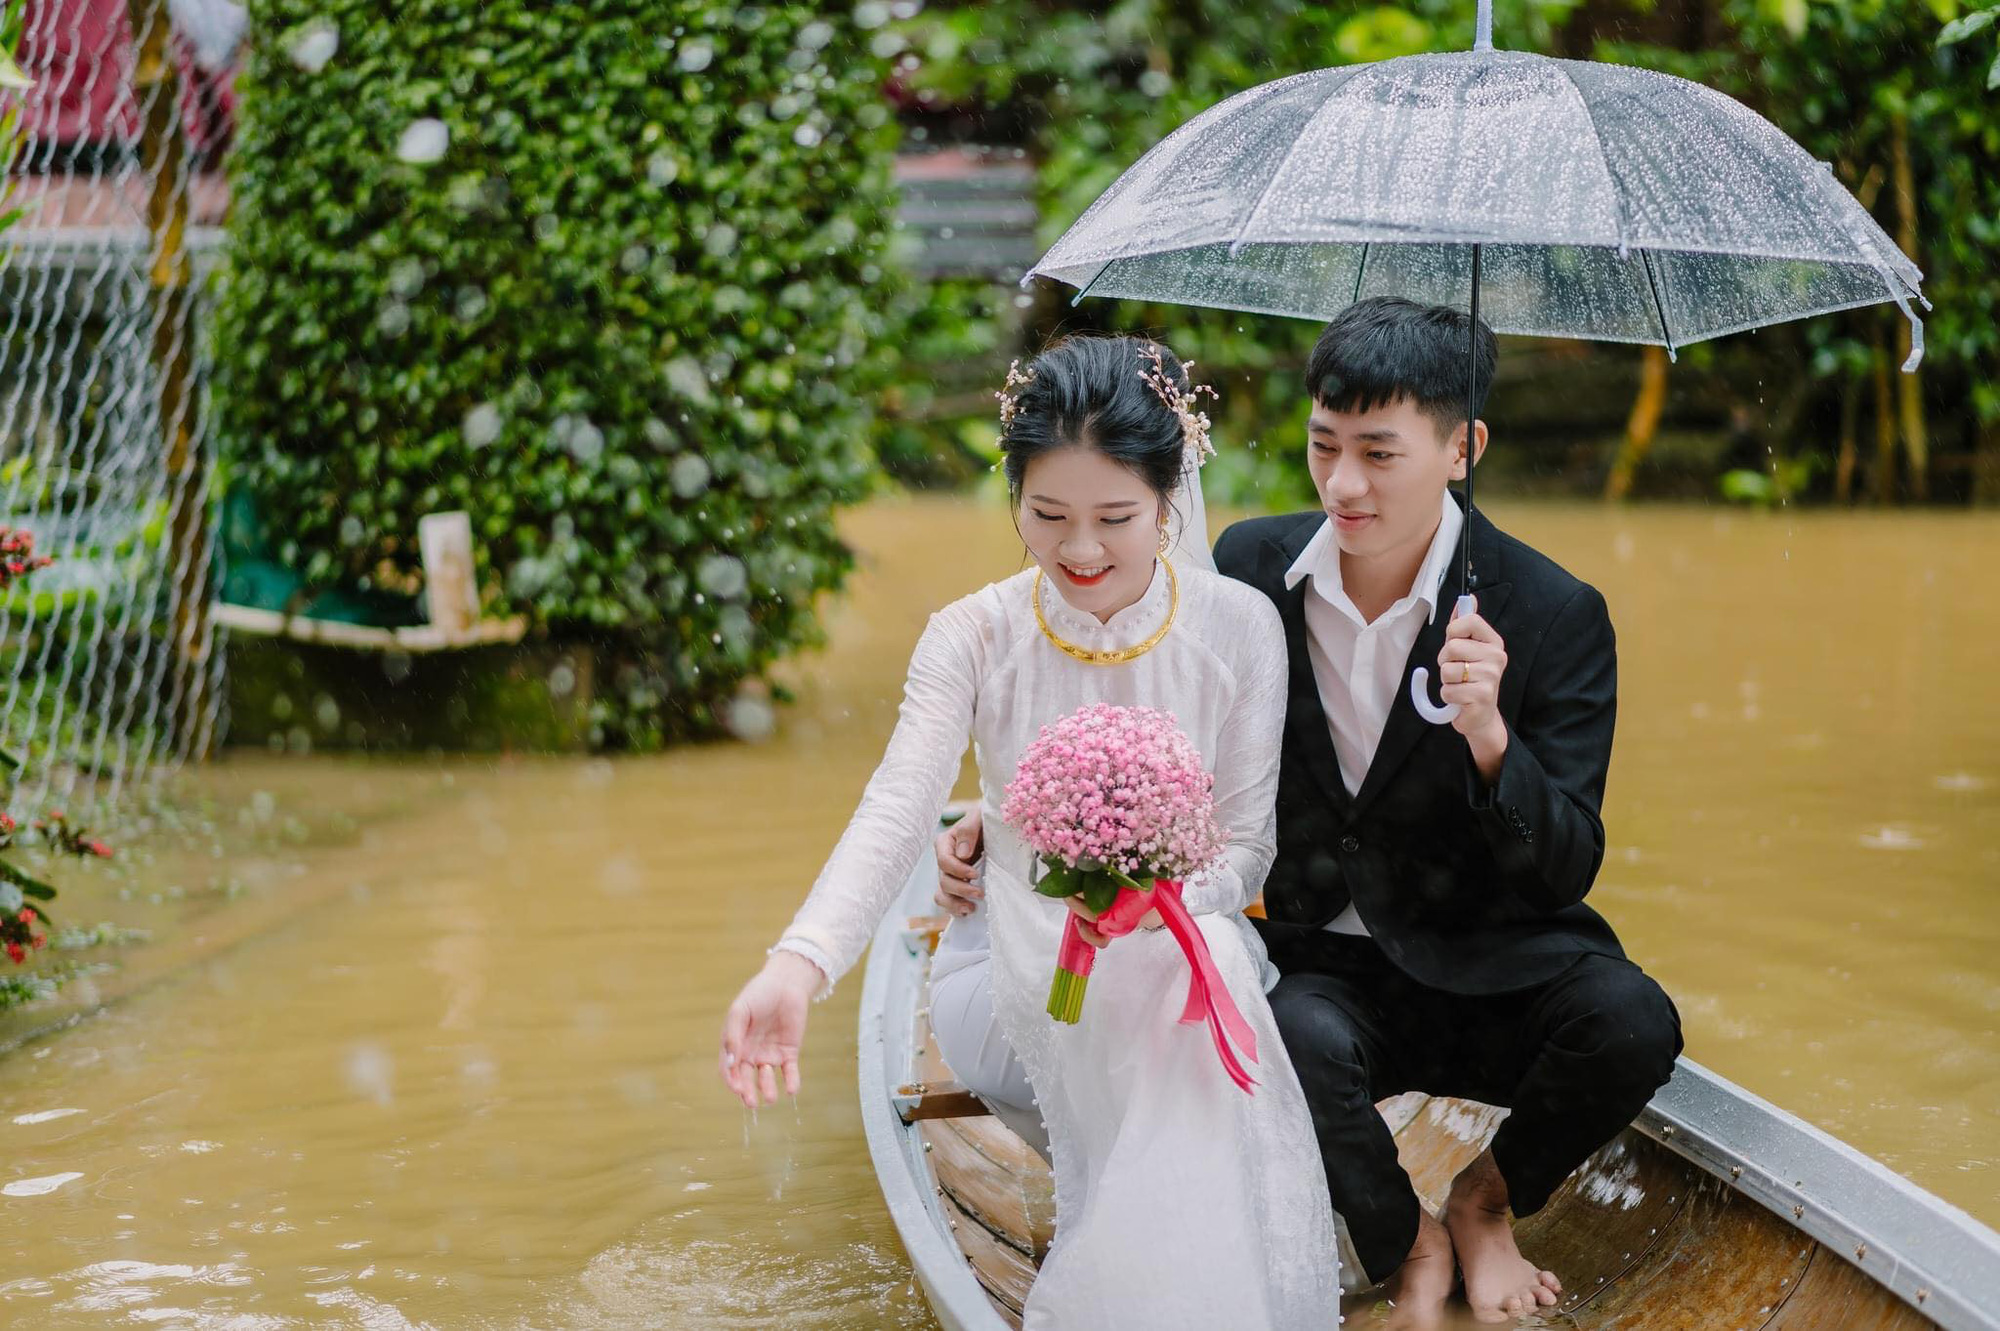 Cảnh tượng hiếm hoi trong lễ đính hôn giữa tháng 4 của cô dâu chú rể Quảng Trị - Ảnh 4.